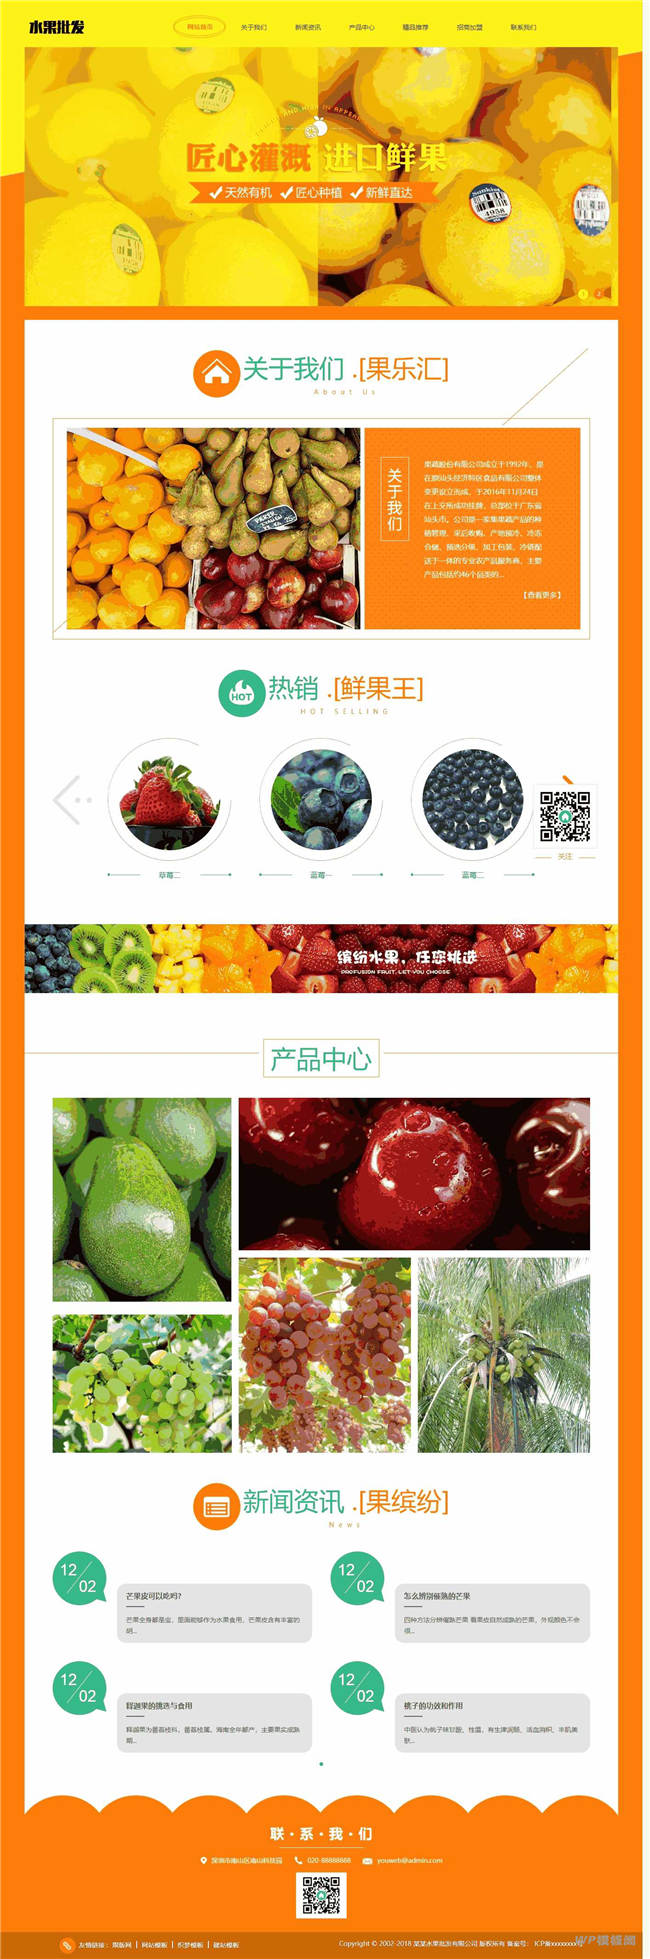 蔬菜水果批发网站制作_网站建设模板截图